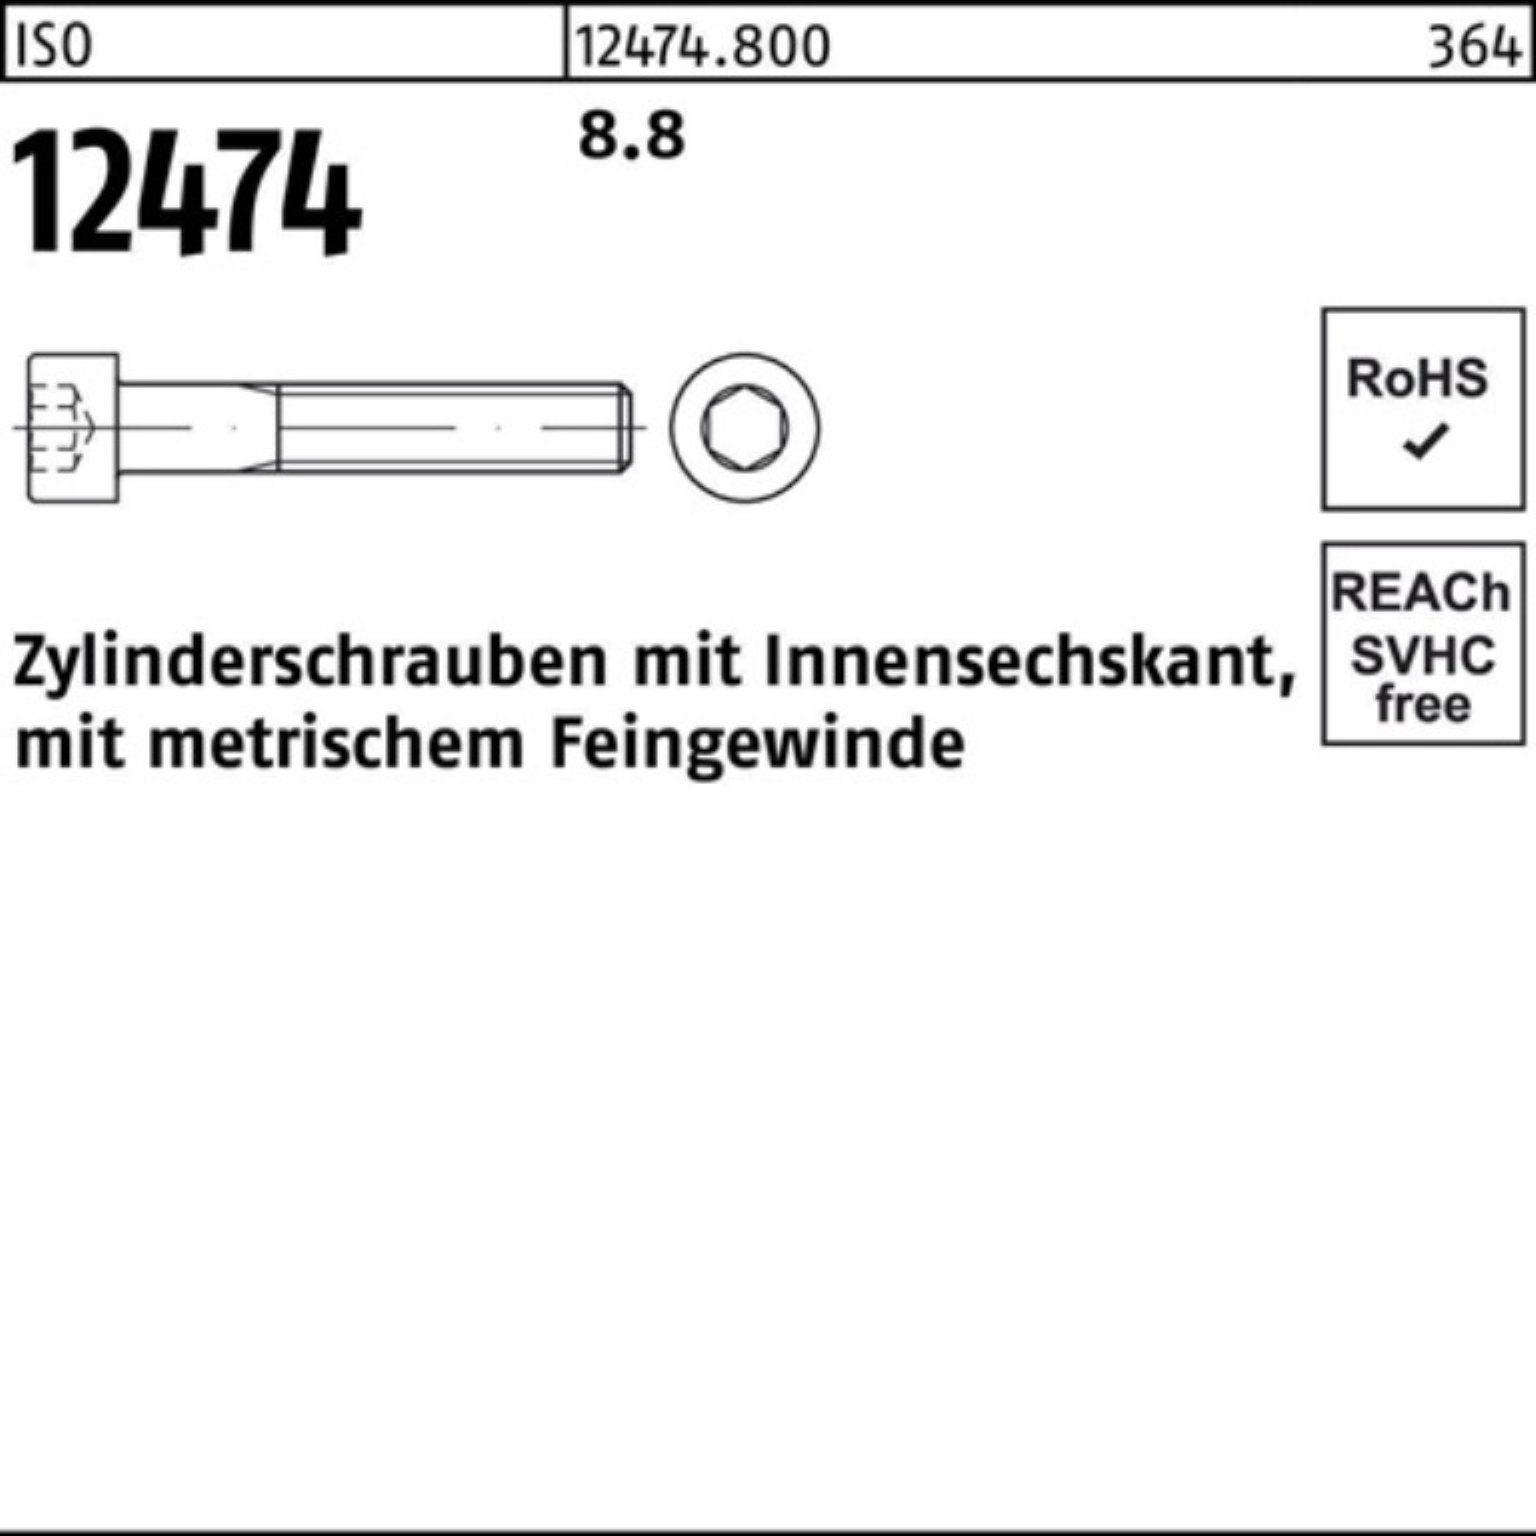 8.8 Reyher 100er Zylinderschraube 12474 St 50 ISO Zylinderschraube 45 Innen-6kt M16x1,5x Pack